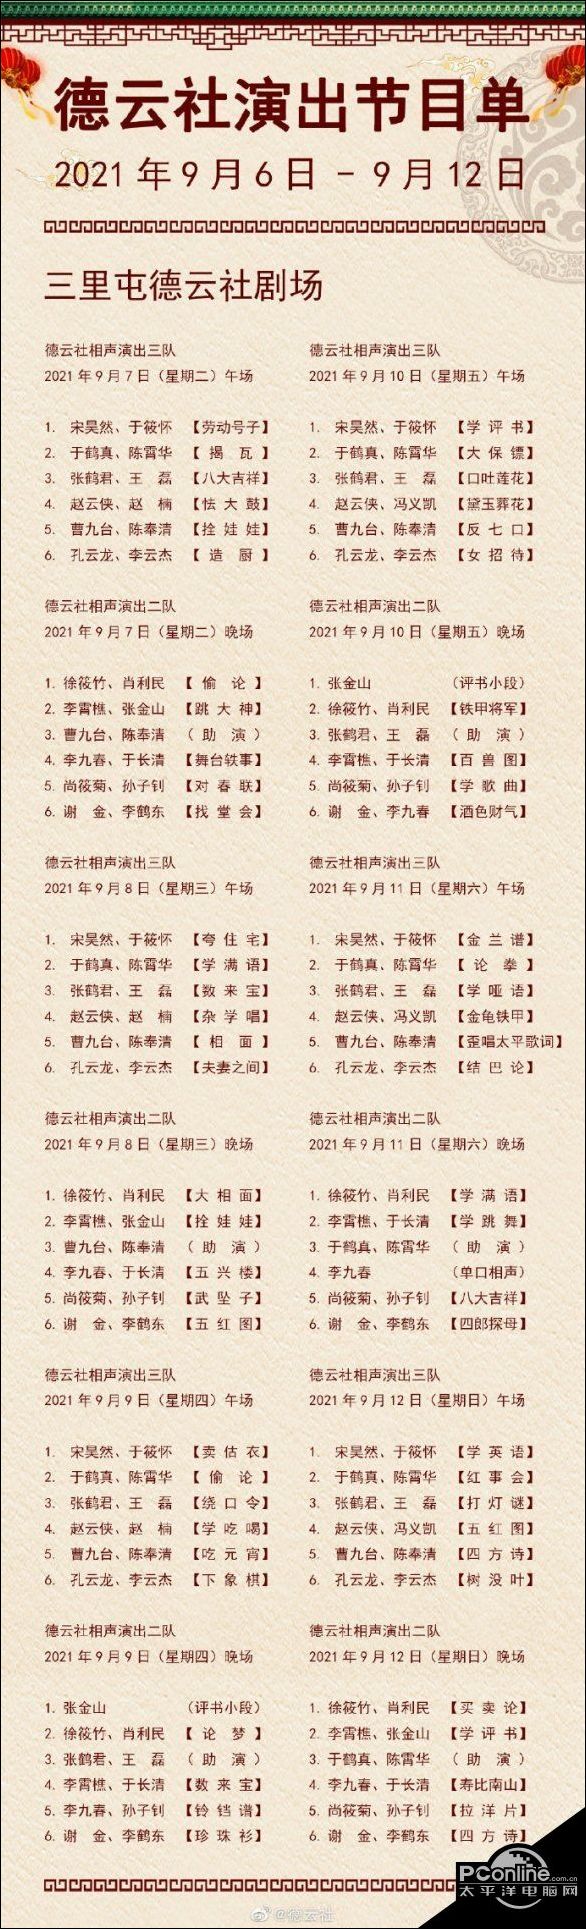 德云社演出节目单2021年9月6日-9月12日 德云社演出节目单2021年9月